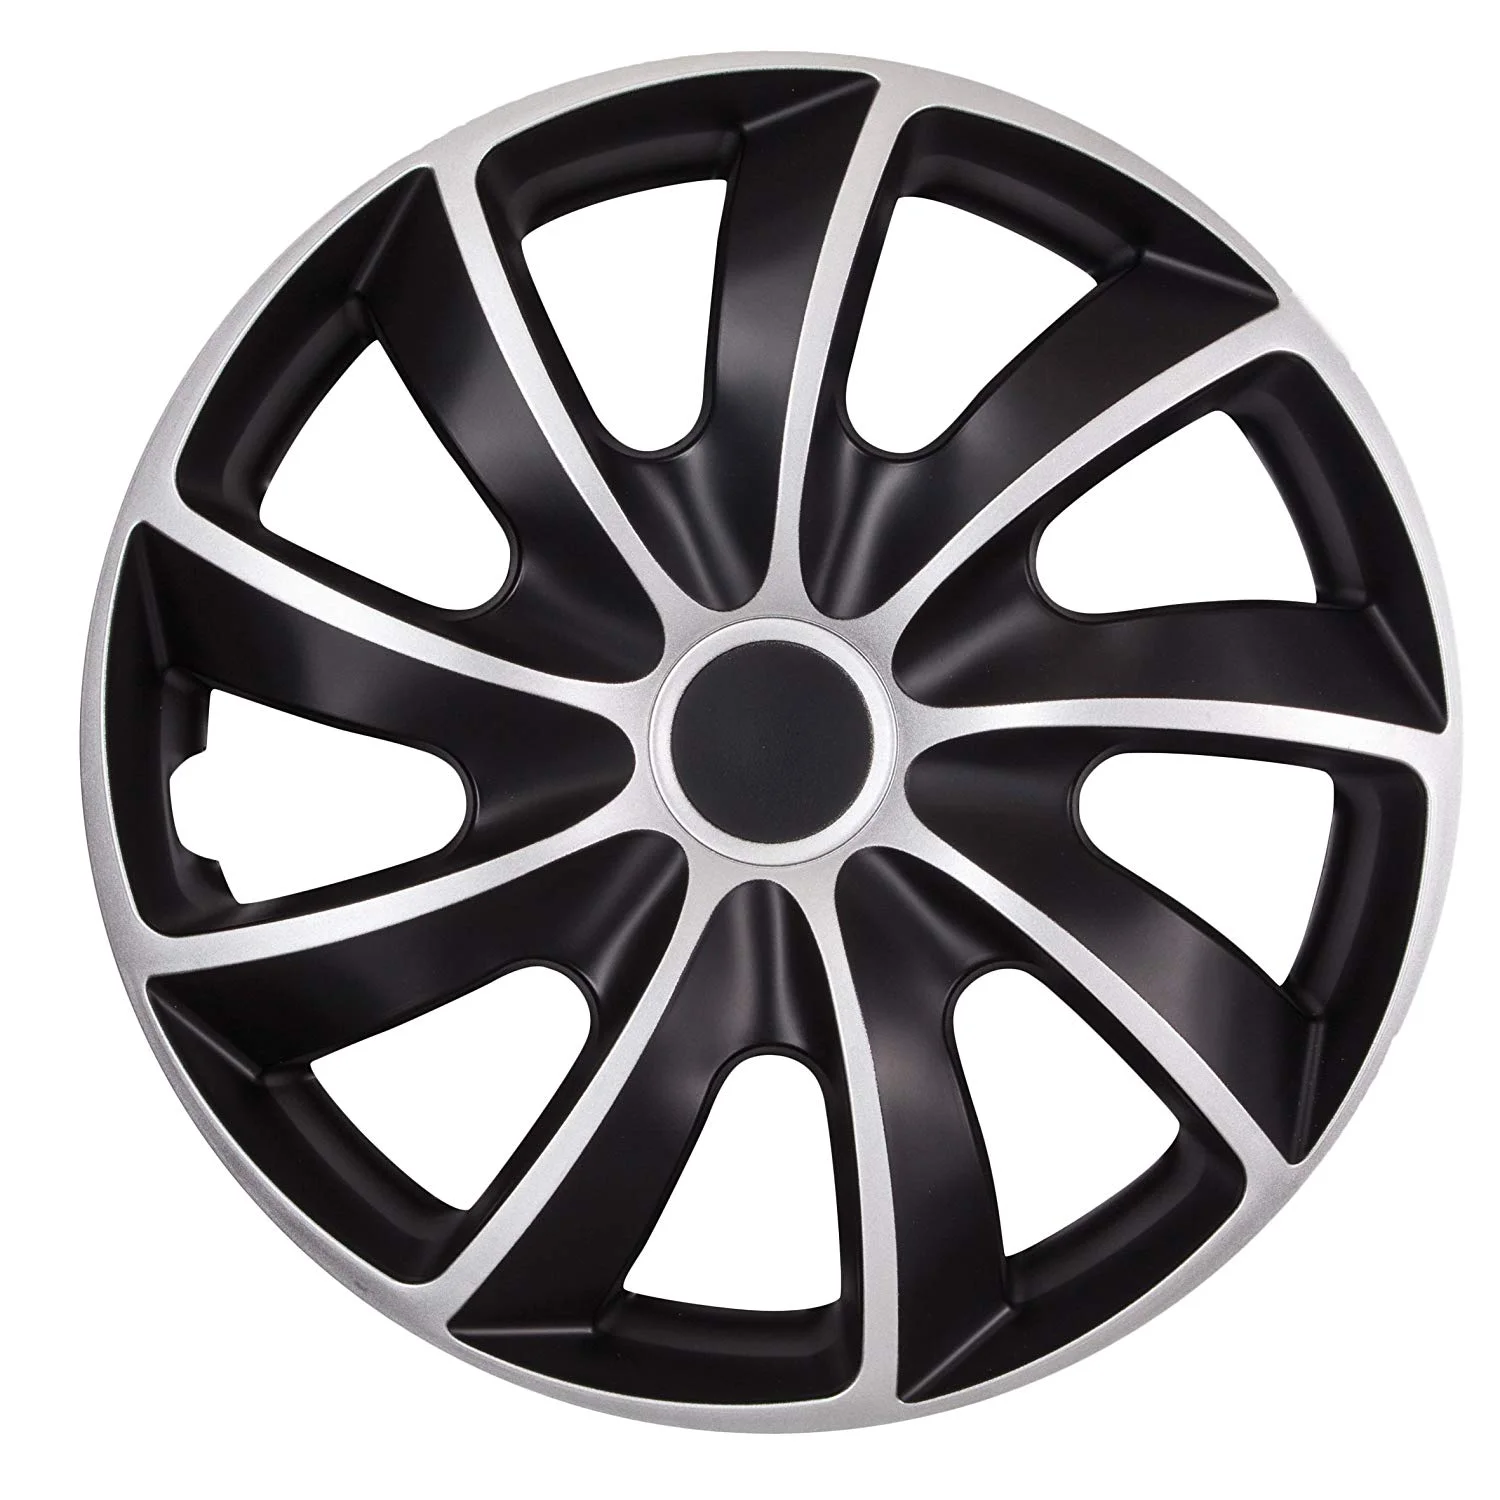 Toledo Conjunto de 4x15 pulgadas rueda Adornos para caber Seat Ibiza Leon Altea XL 